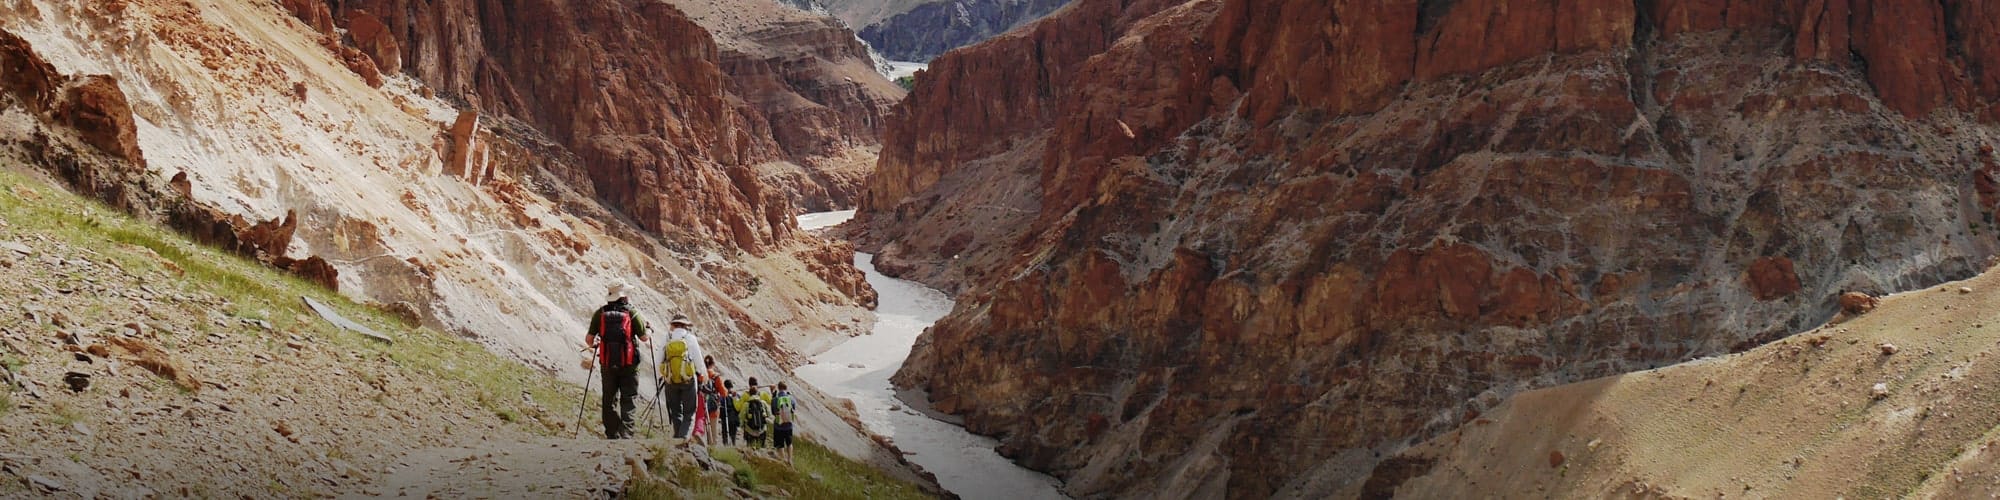 Trekking au Ladakh : randonnée, trek et voyage © Jean Claude Colin